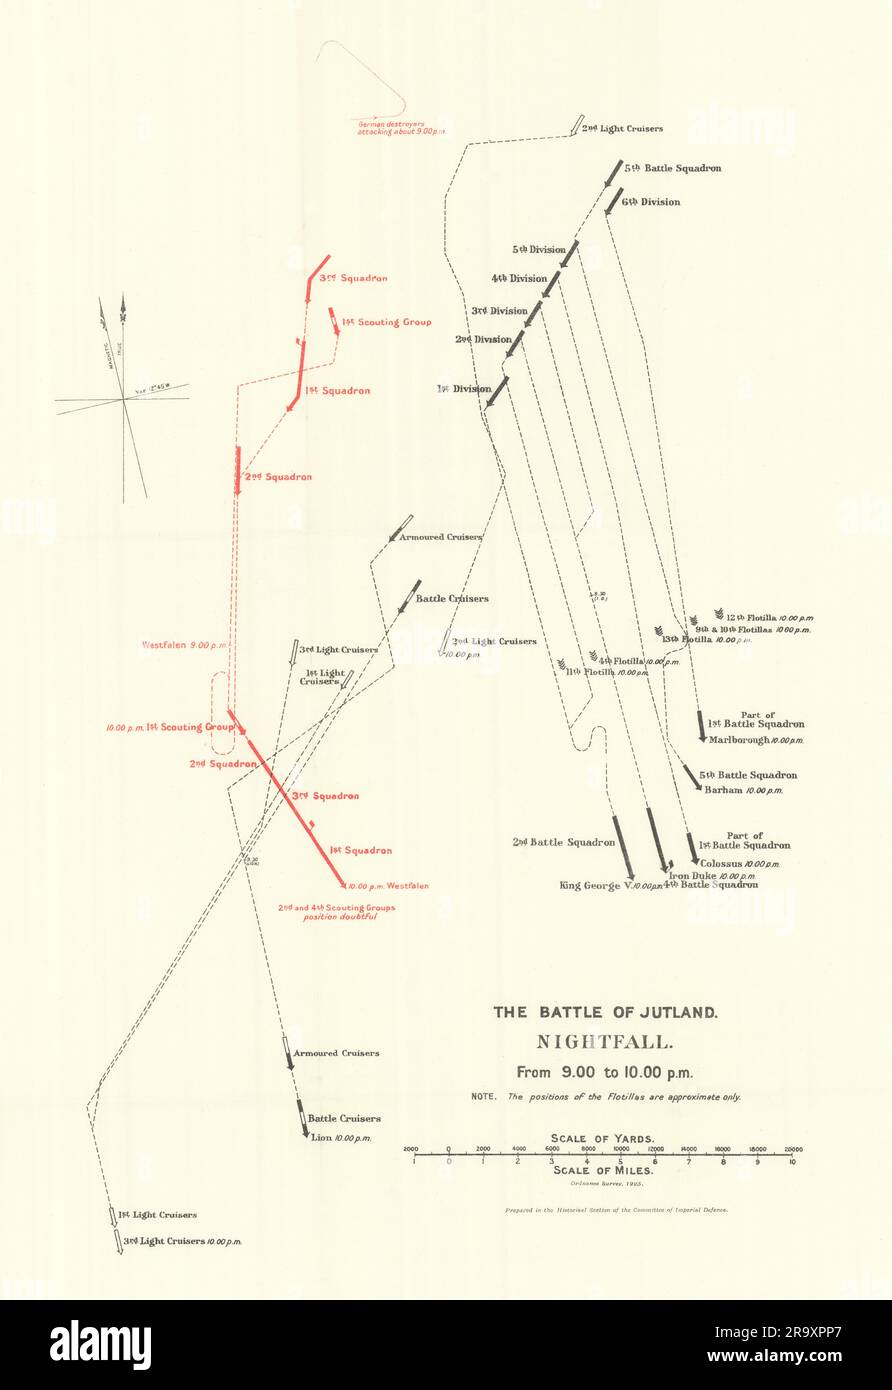 Battaglia dello Jutland. Calare la notte. Dalle 9,00 alle 10,00 del 31 maggio 1916. WW1. 1923 vecchia mappa Foto Stock